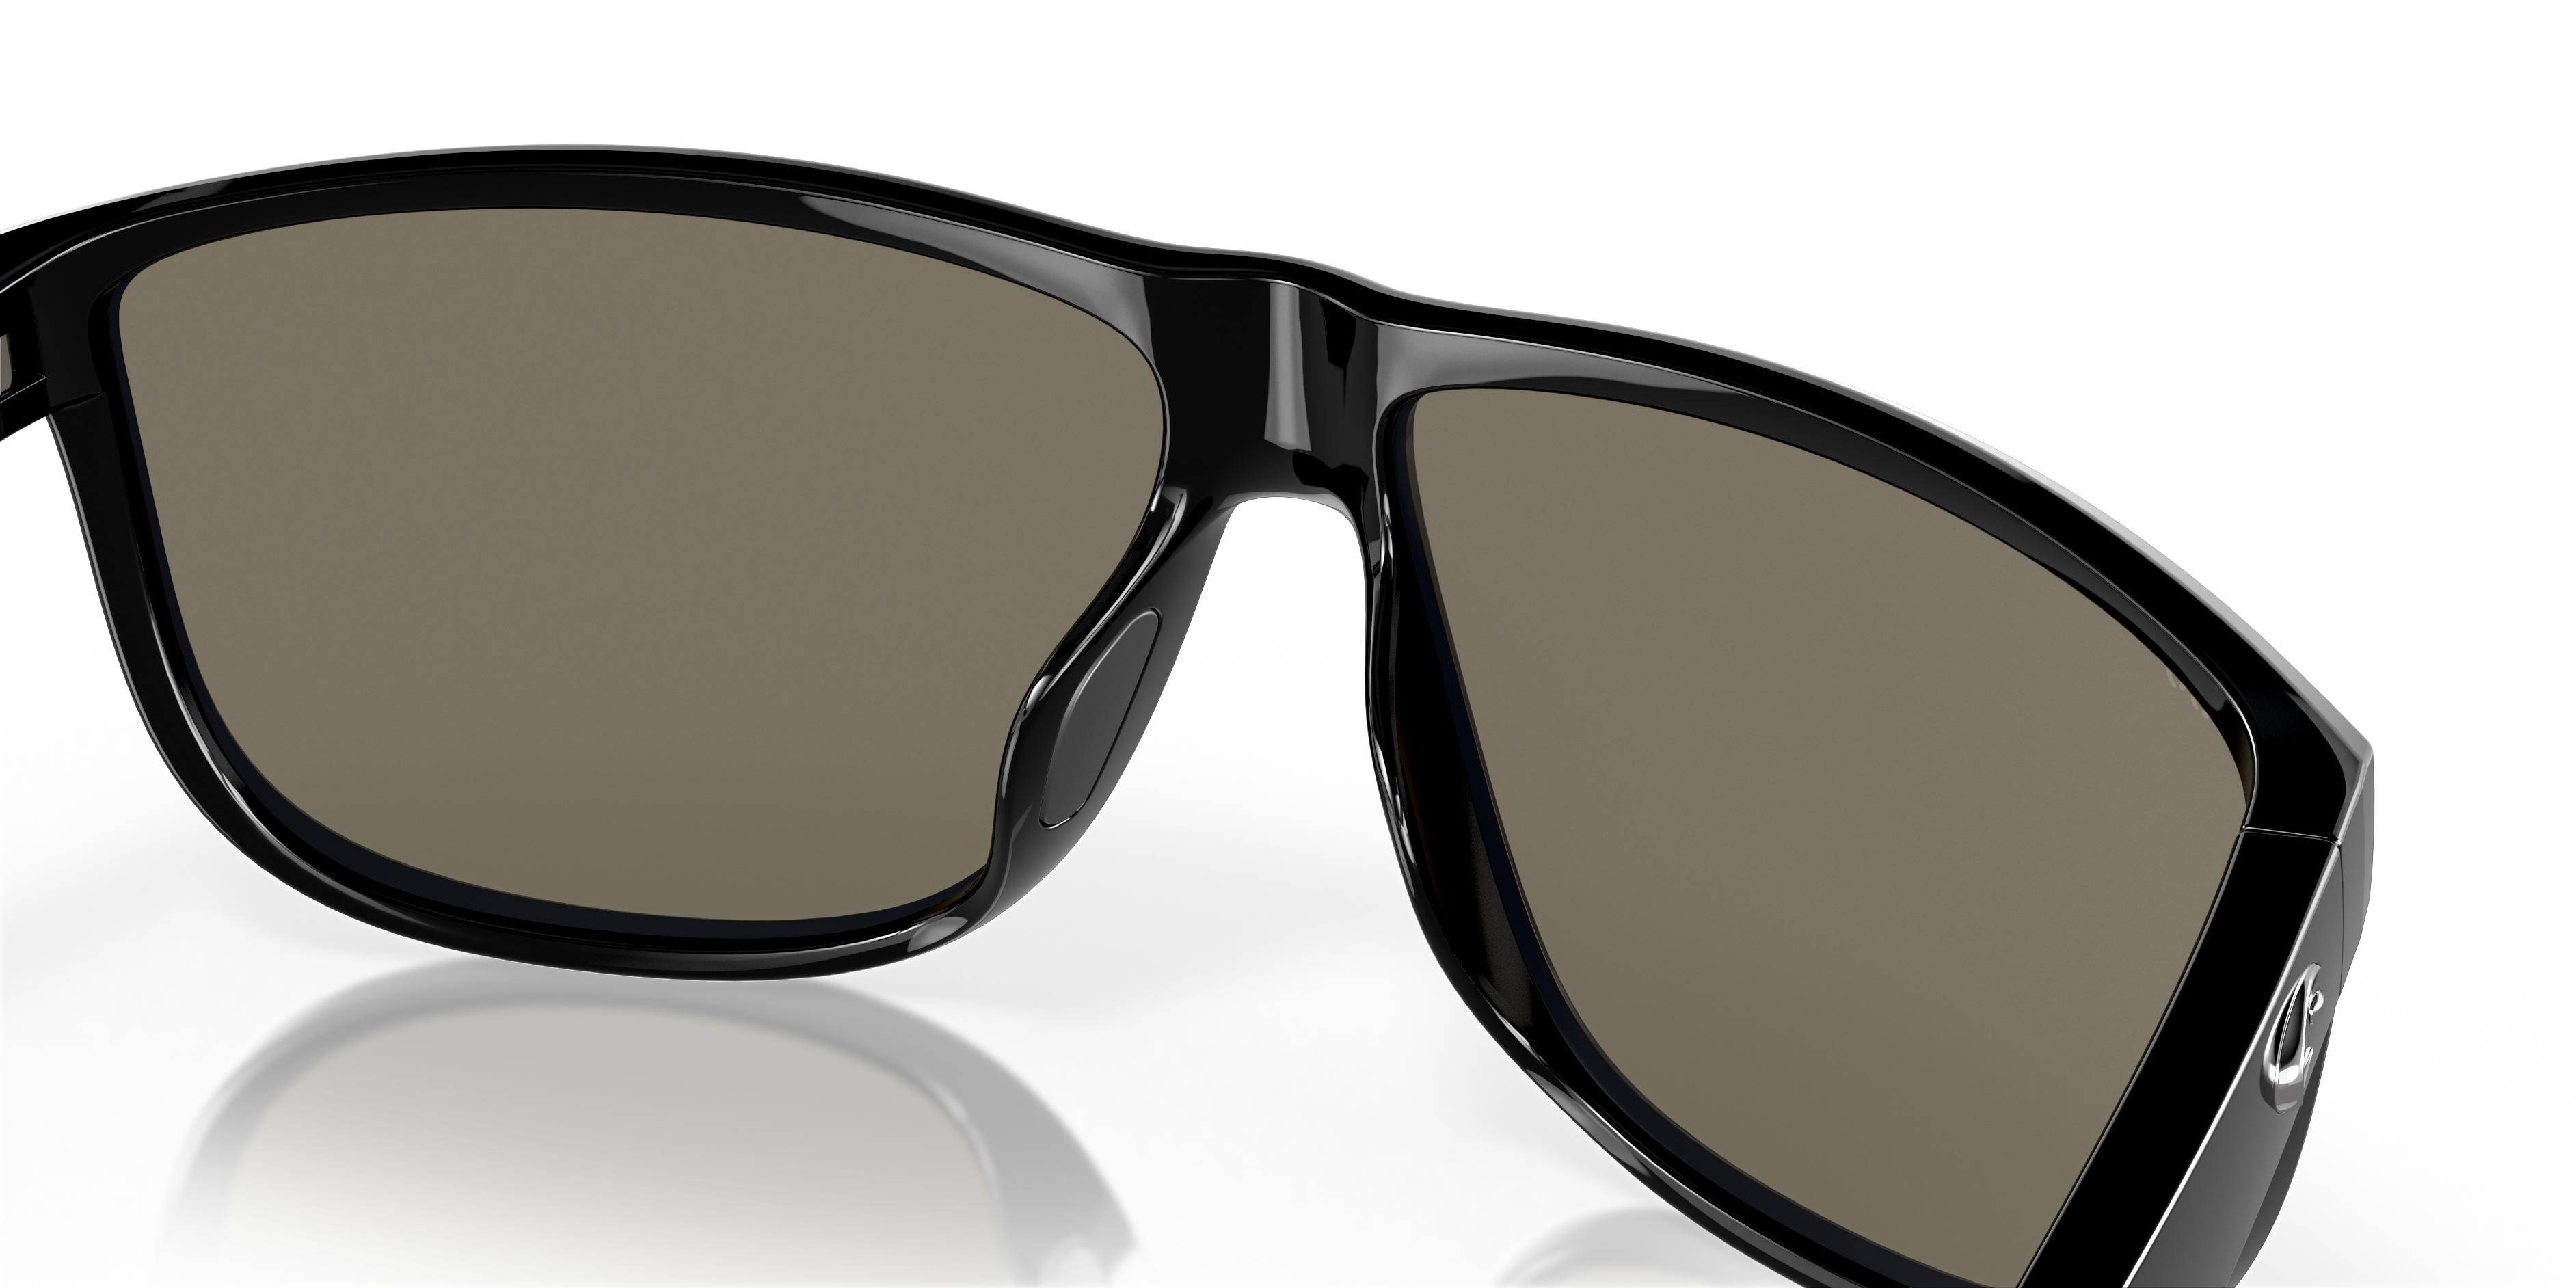 Rincondo Polarized Sunglasses in Blue Mirror | Costa Del Mar®